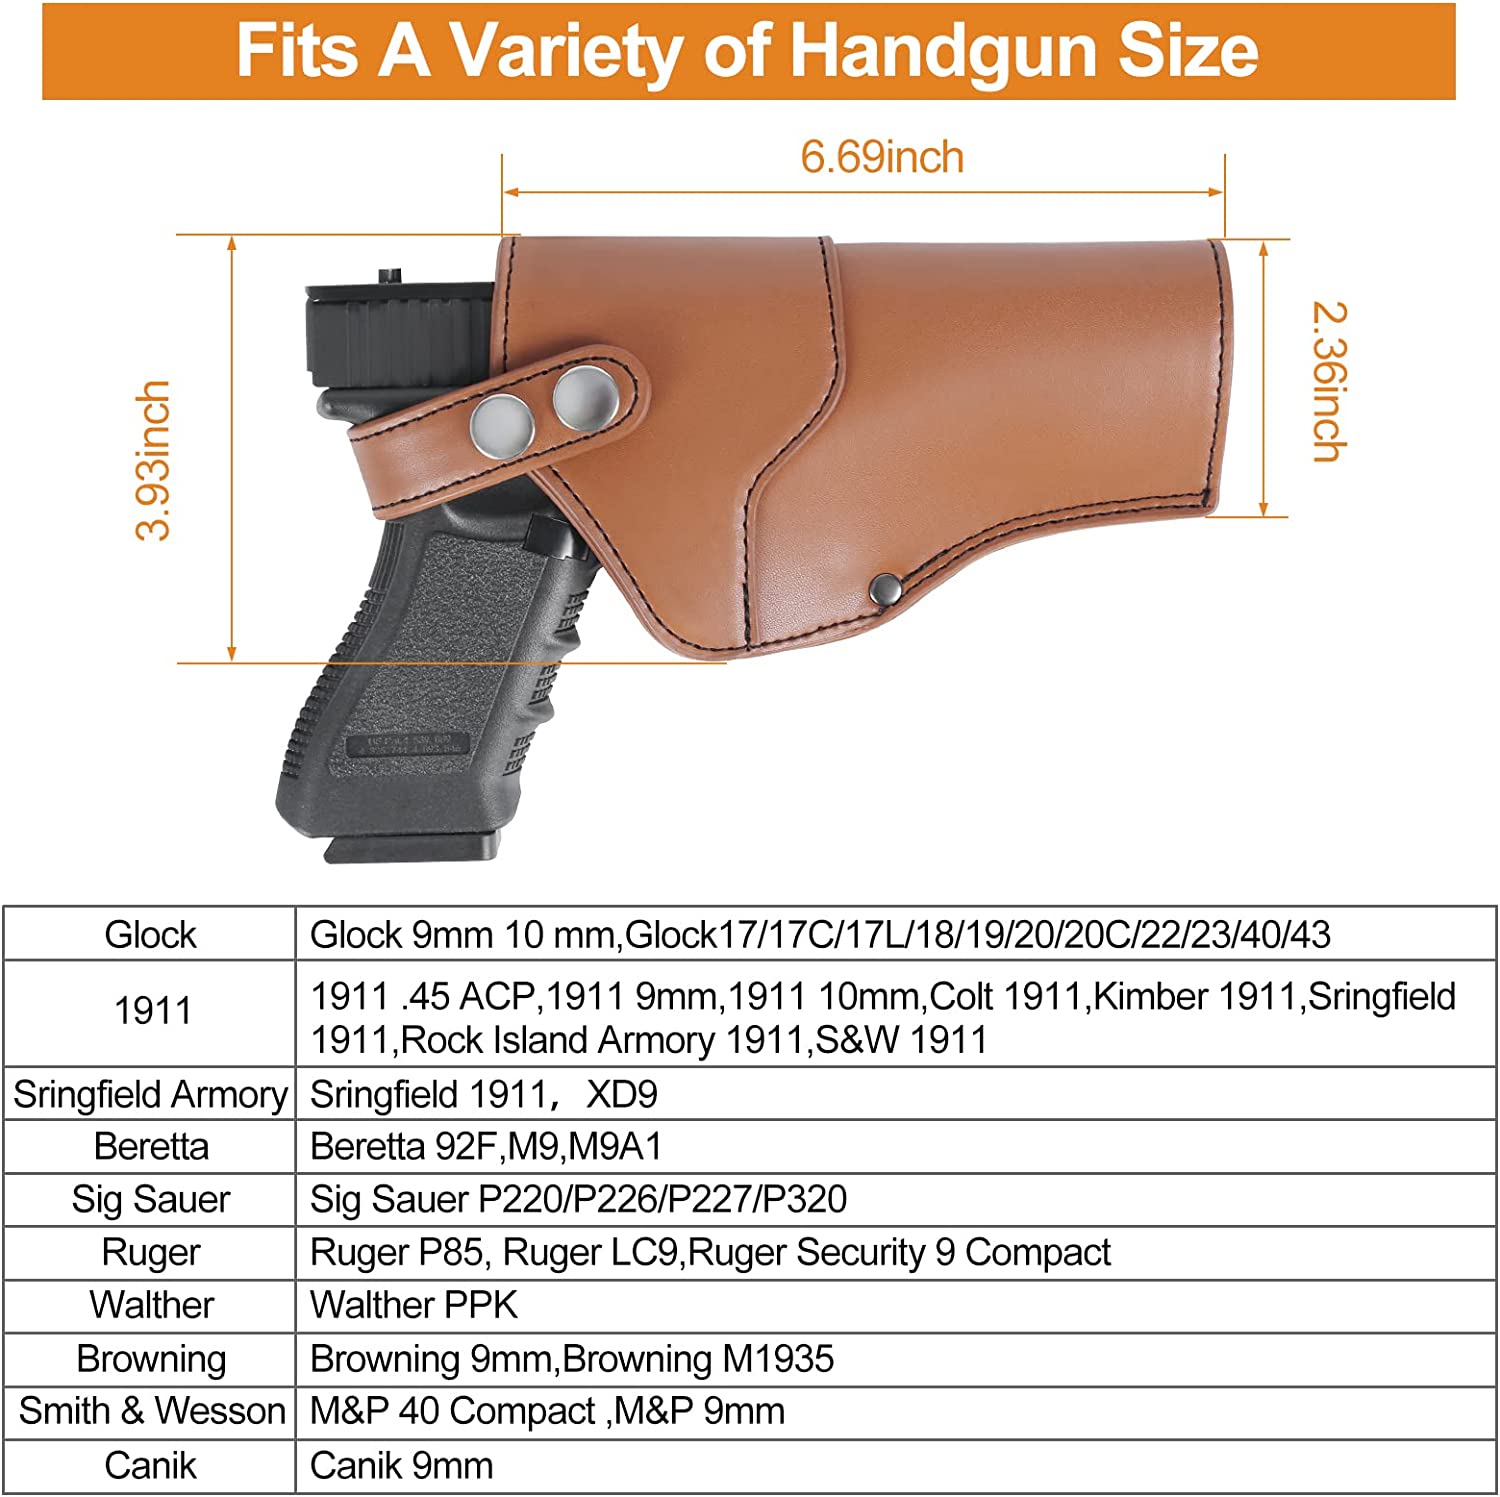 Leather Shoulder Holster for Concealed Carry